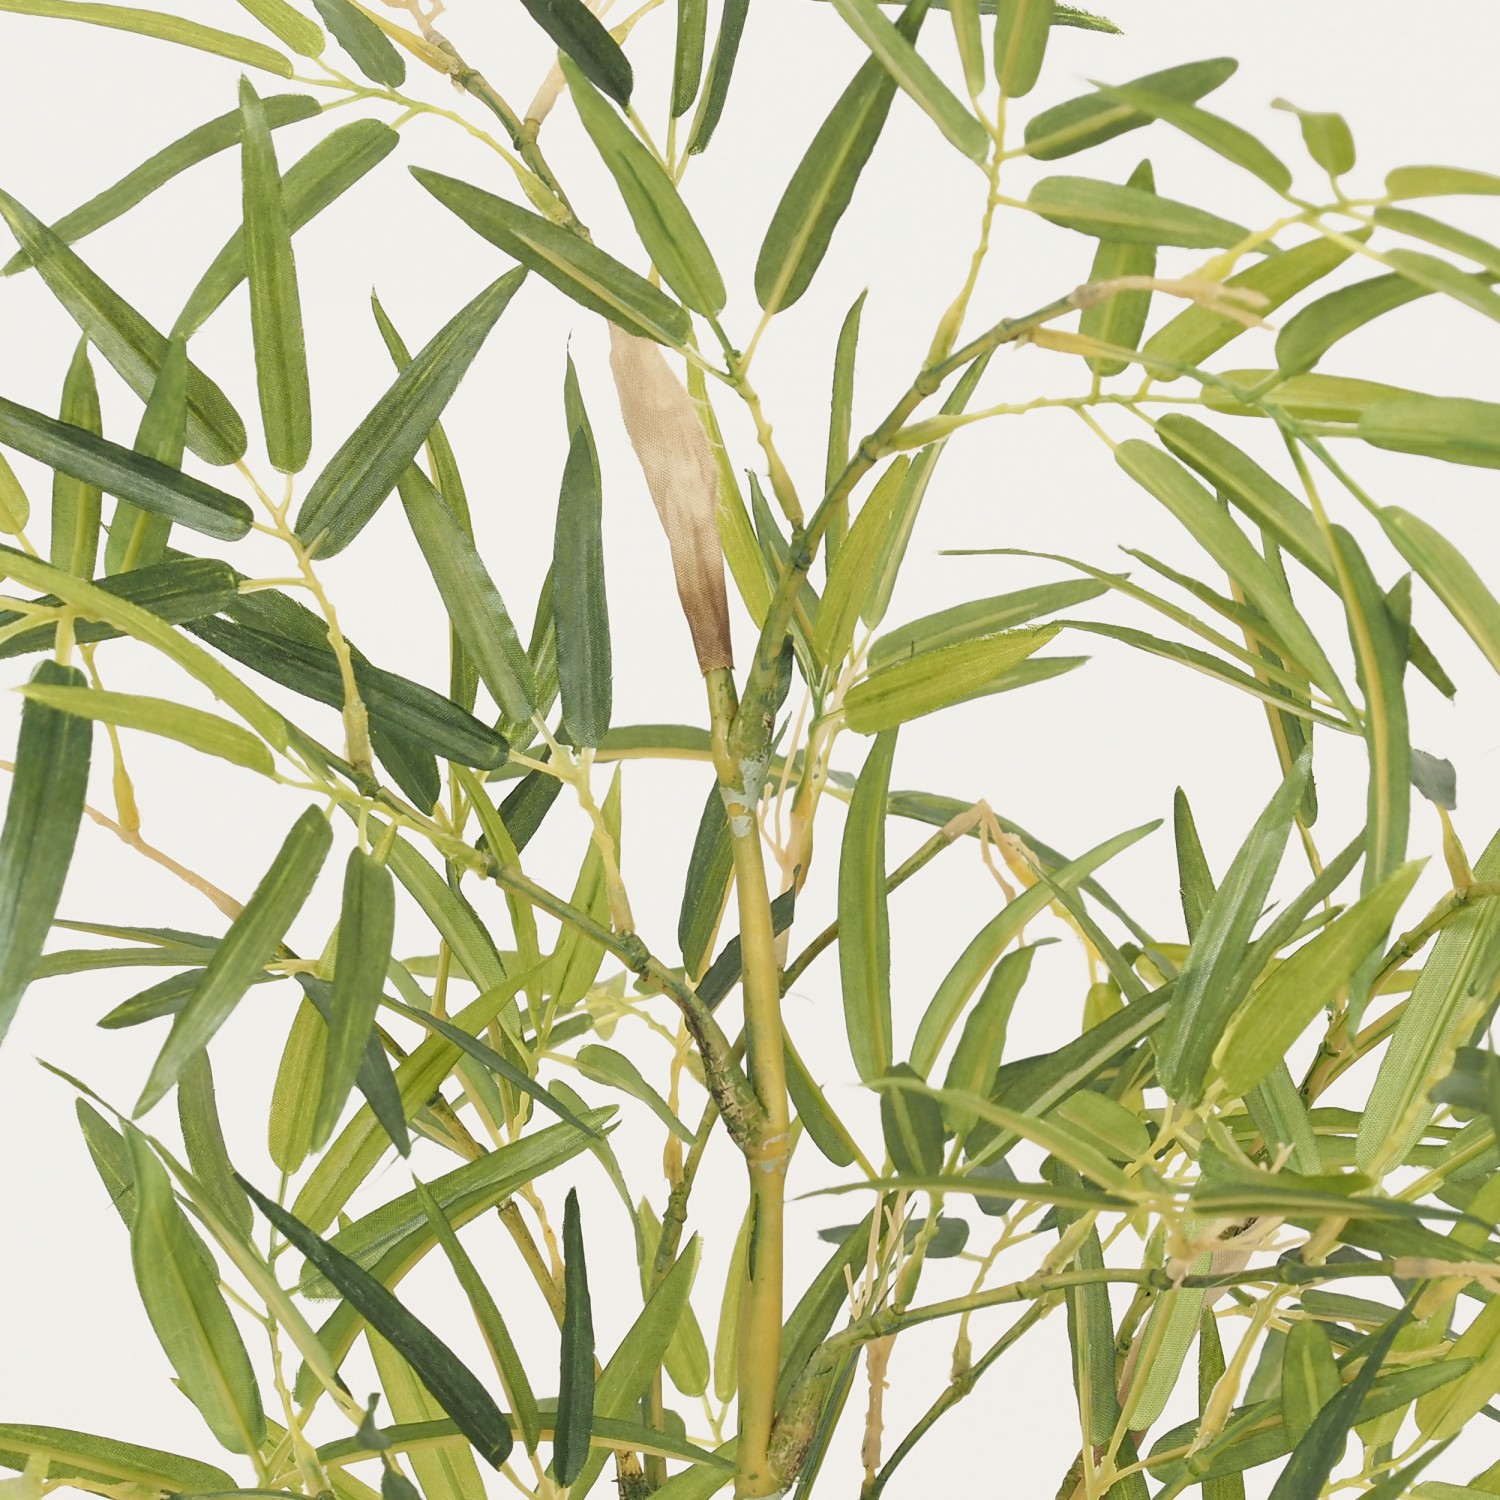 Arbre Artificiel Bonsaï Plante Verte Bambou Japonais, Pot Ovale Céramique, H.45cm | BOHOO